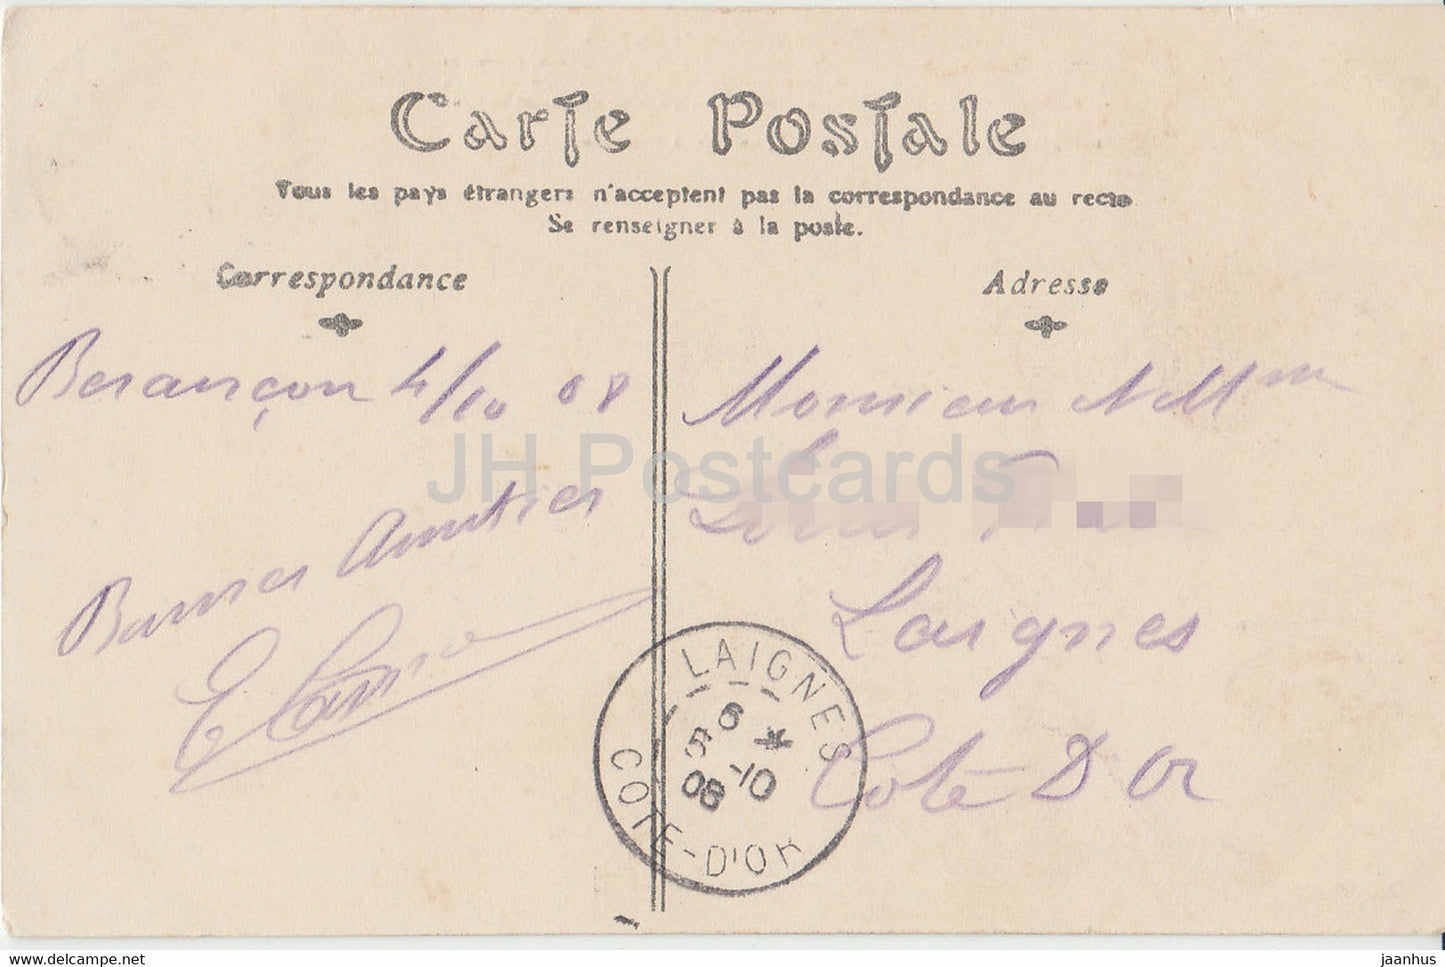 Besançon - L'Horloge de St Jean - horloge - carte postale ancienne - 1908 - France - occasion